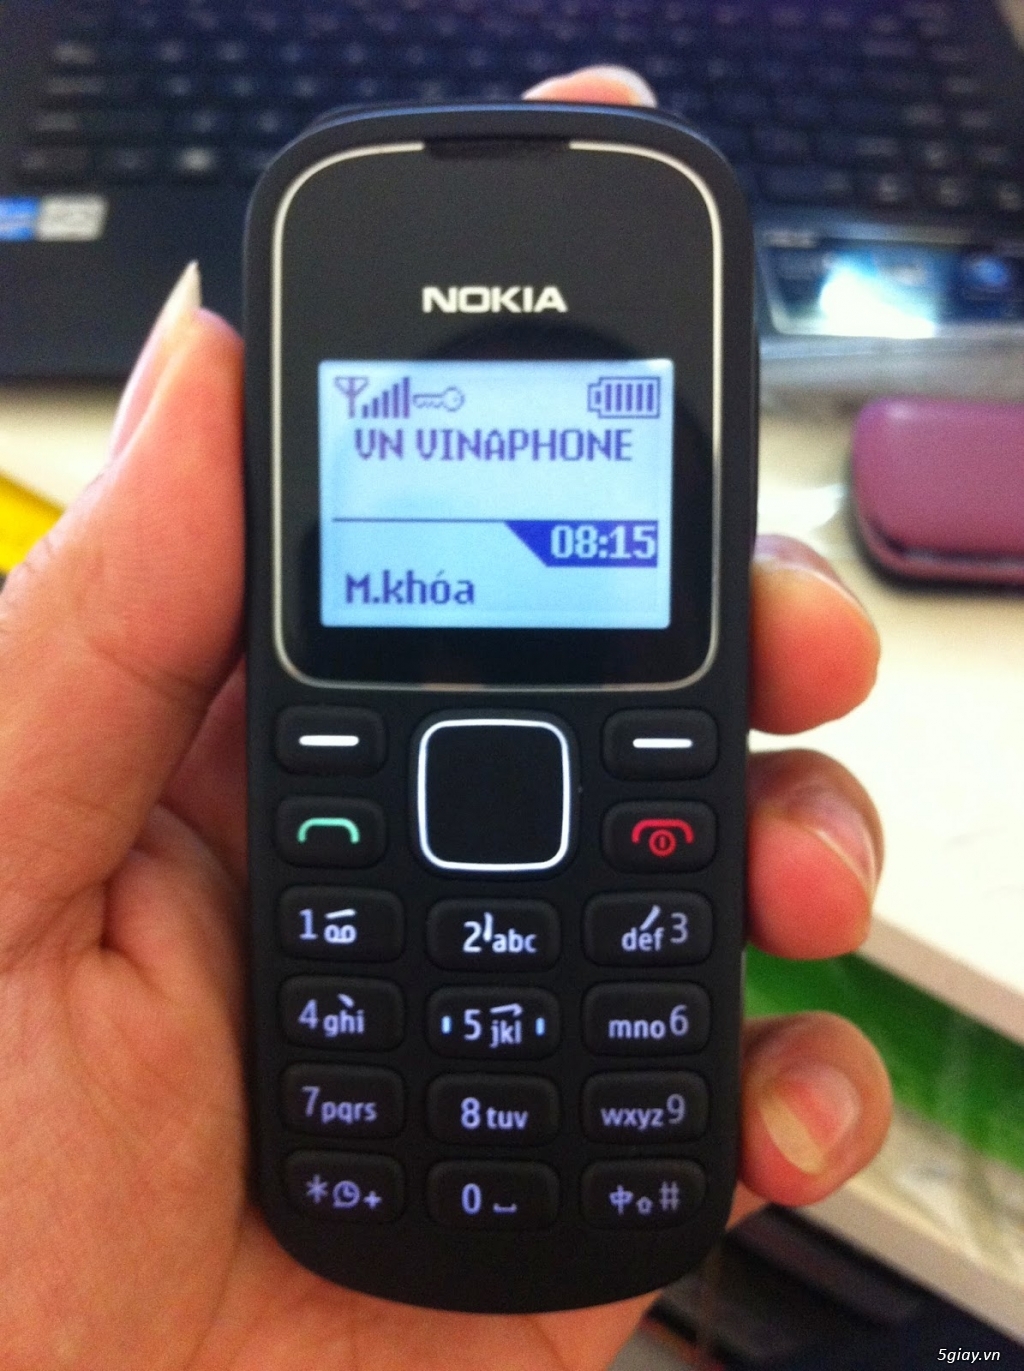 Điện Thoại Nokia Cổ chữa cháy giá rẻ - 1